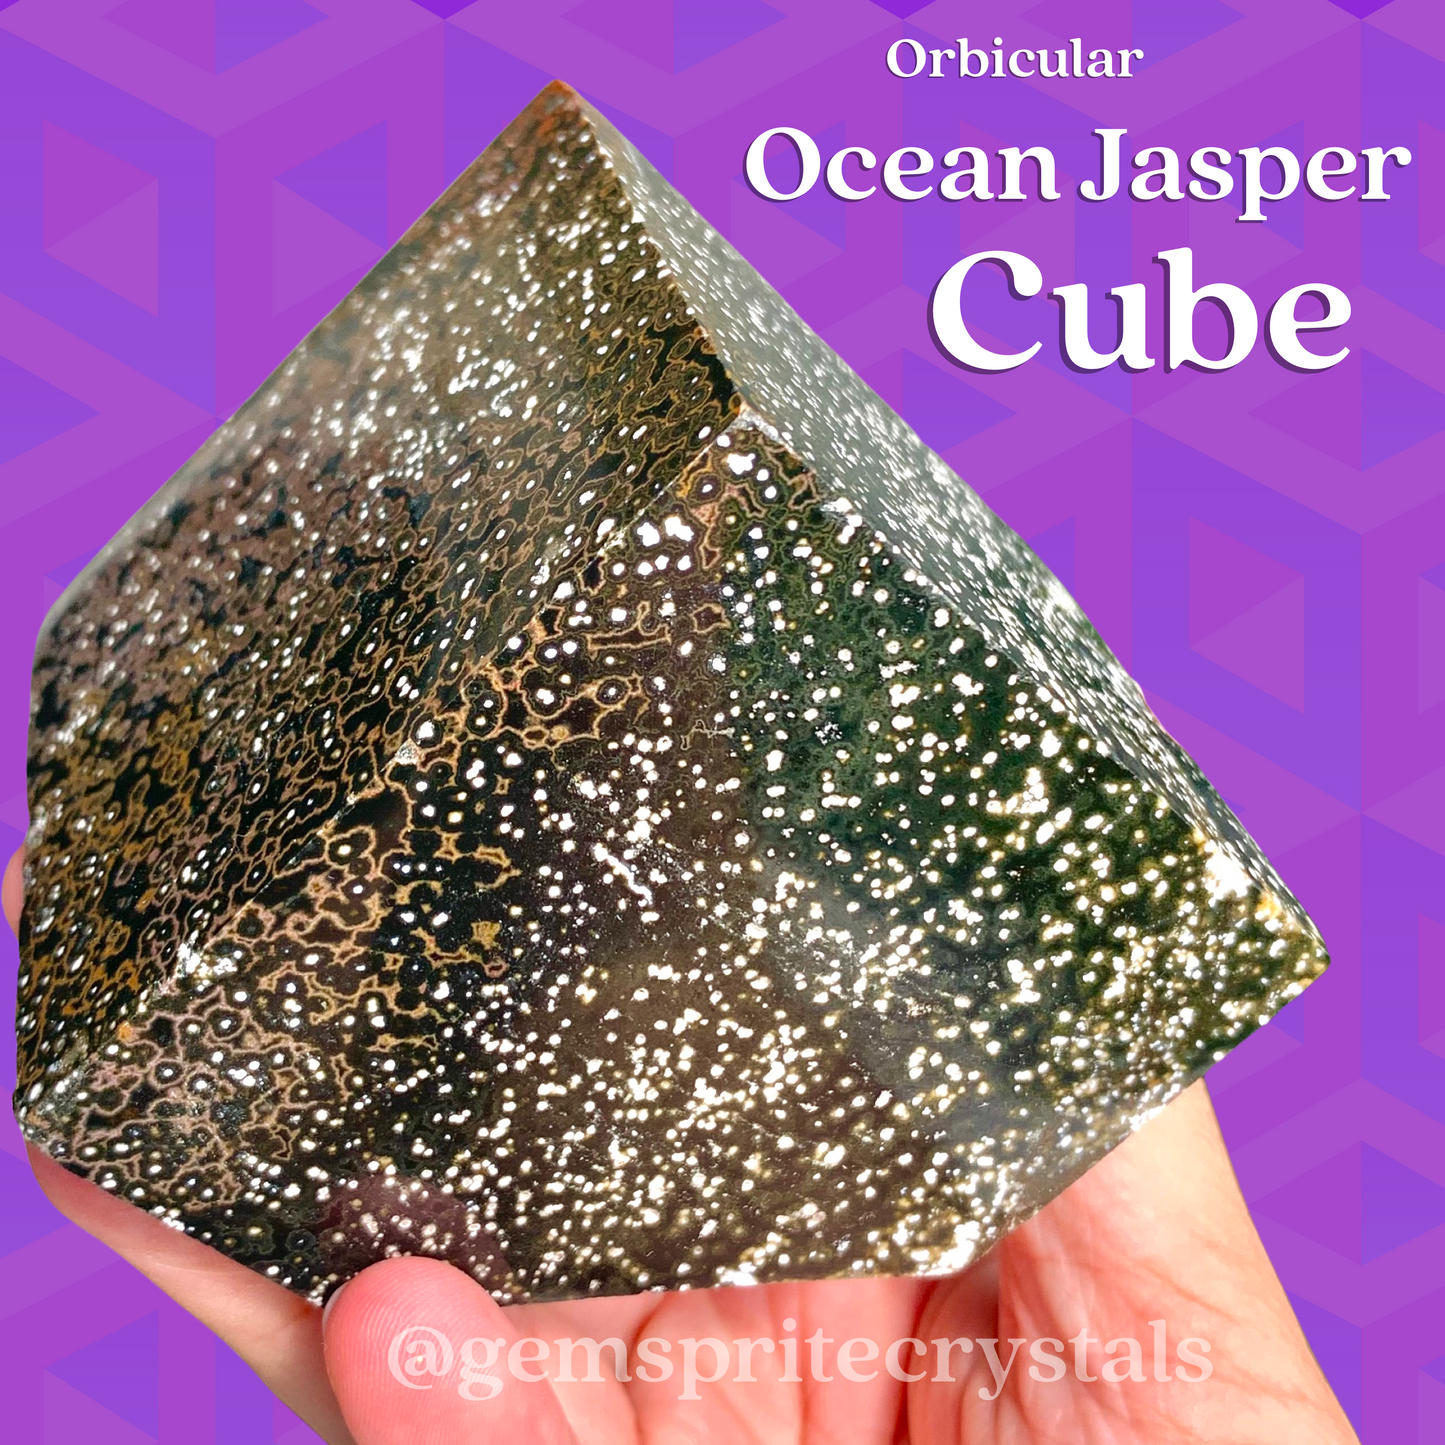 Orbicular Ocean Jasper Cube